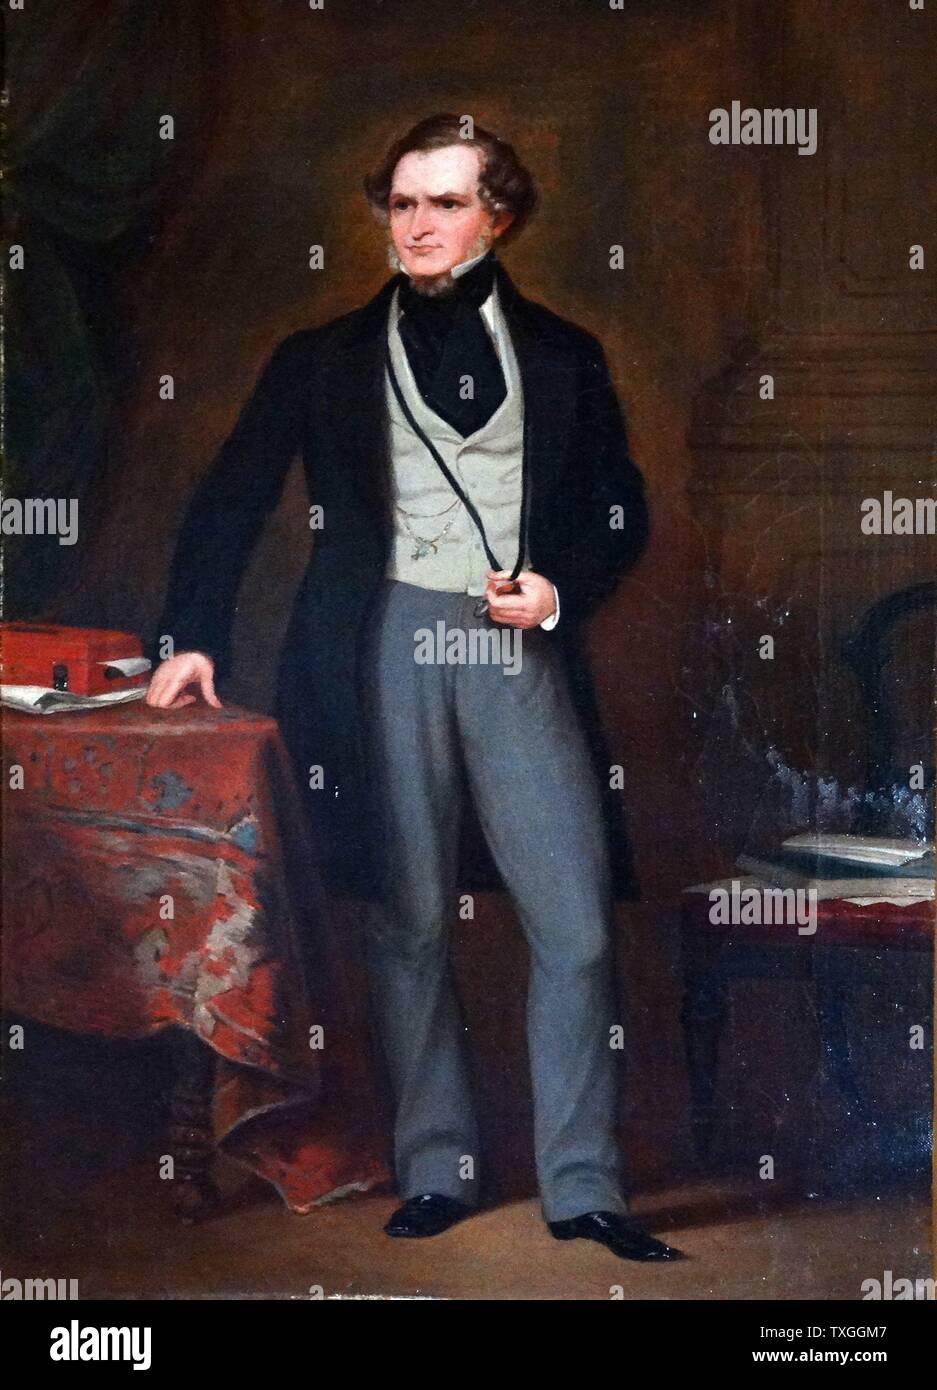 Edward George Smith-Stanley, 14º Conde de Derby (1799 - 1869). Estadista británico, tres veces Primer Ministro del Reino Unido, y hasta la fecha el más antiguo líder del partido conservador Foto de stock